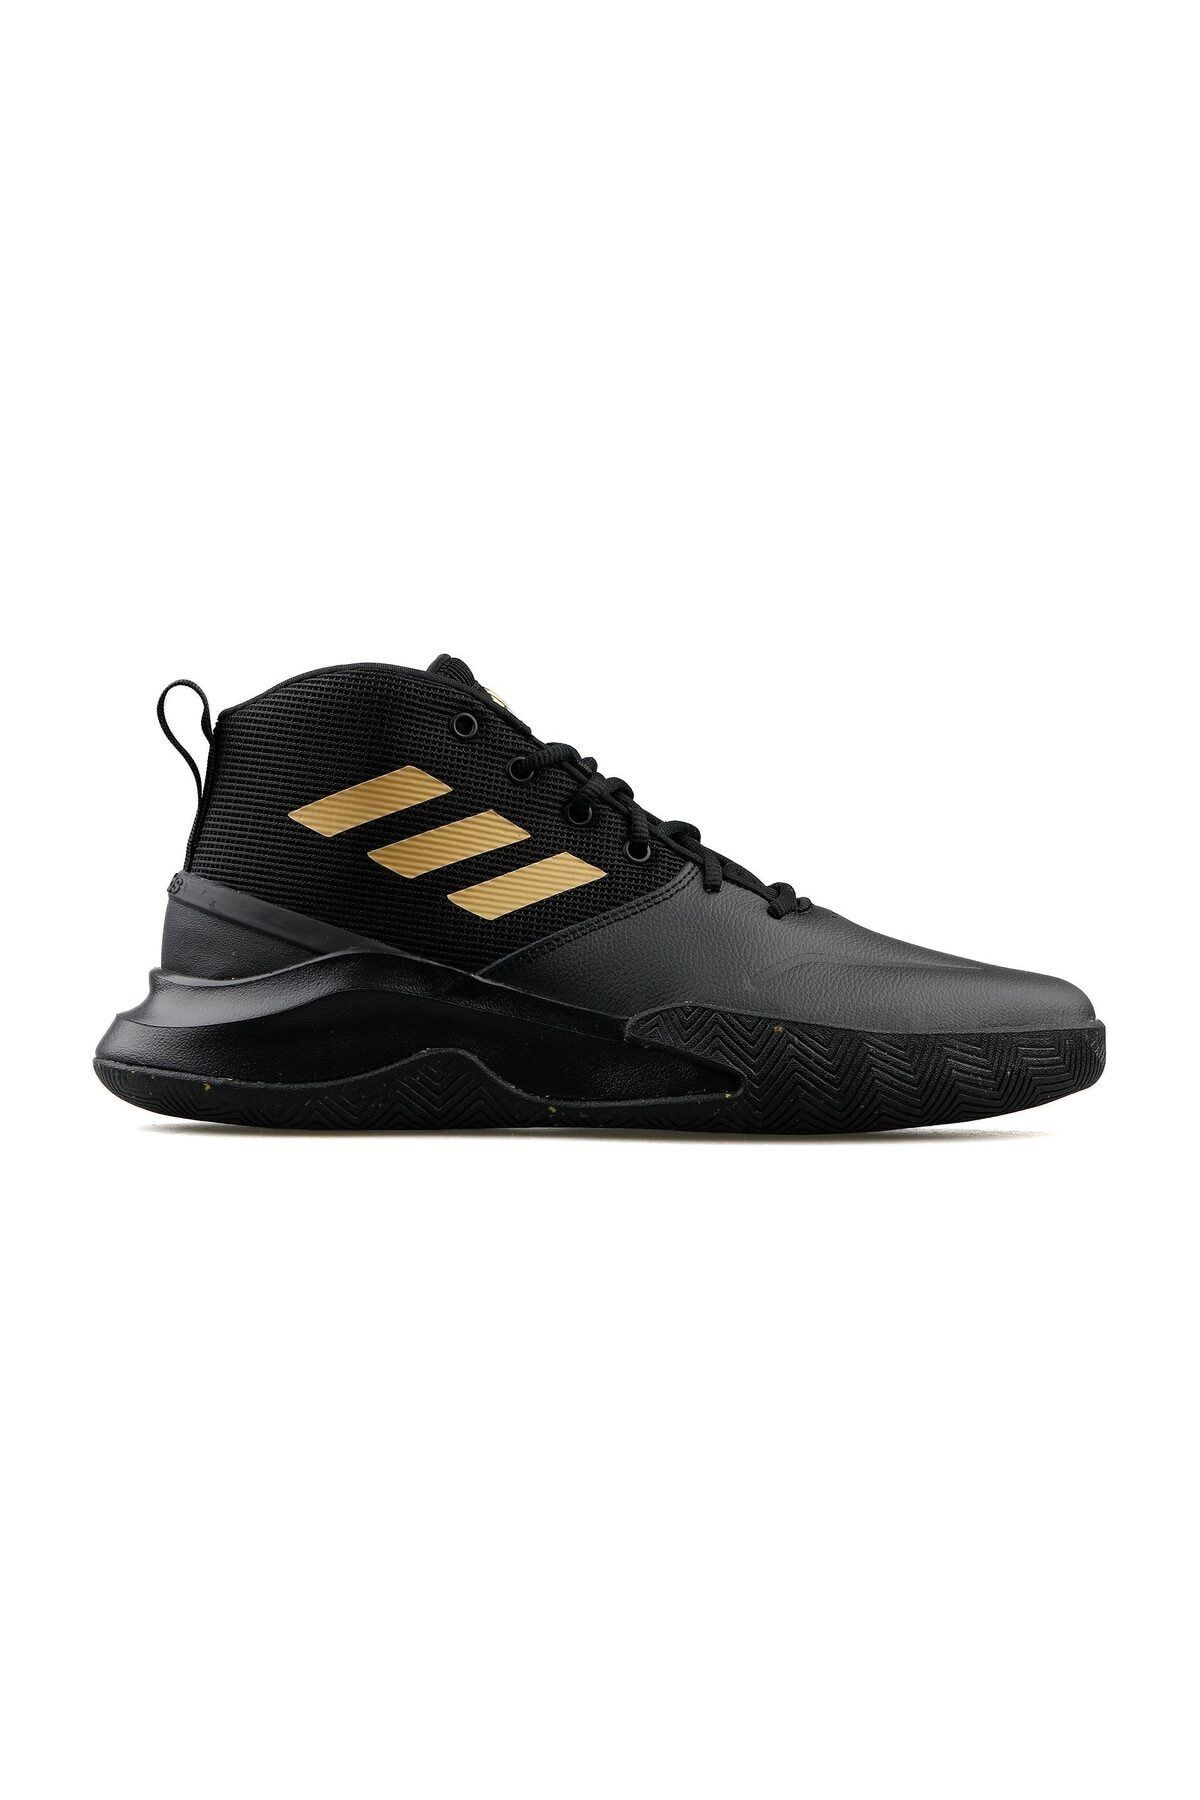 adidas Ownthegame Erkek Basketbol Ayakkabısı FW4562